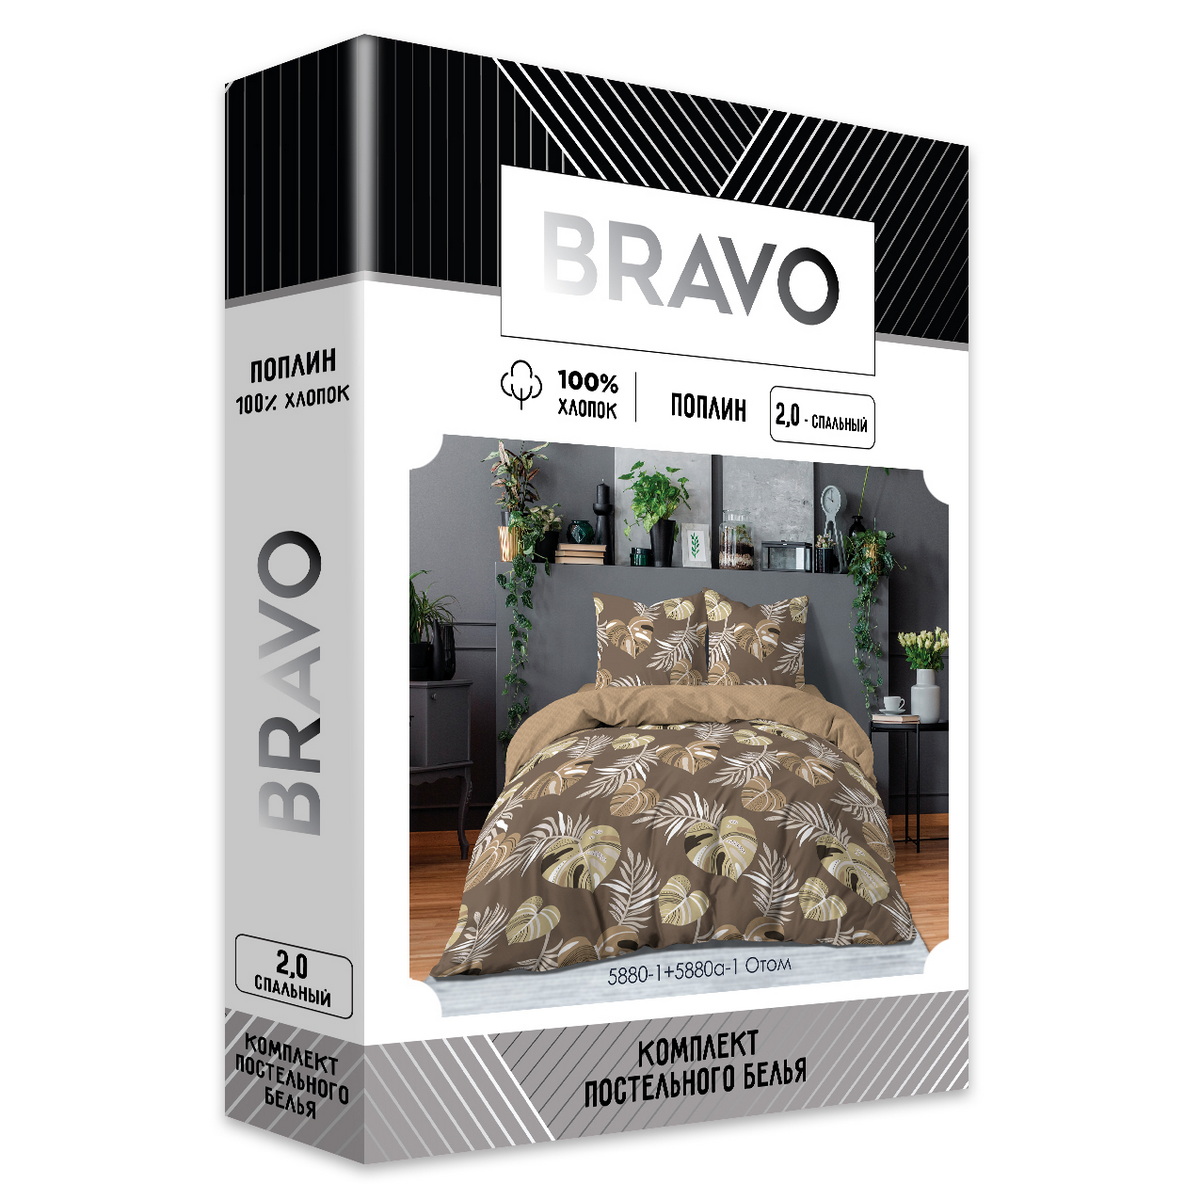 Комплект постельного белья Bravo Отом 2 спальный наволочки 70х70 м 205 рис 5880-1+5880а-1 - фото 9